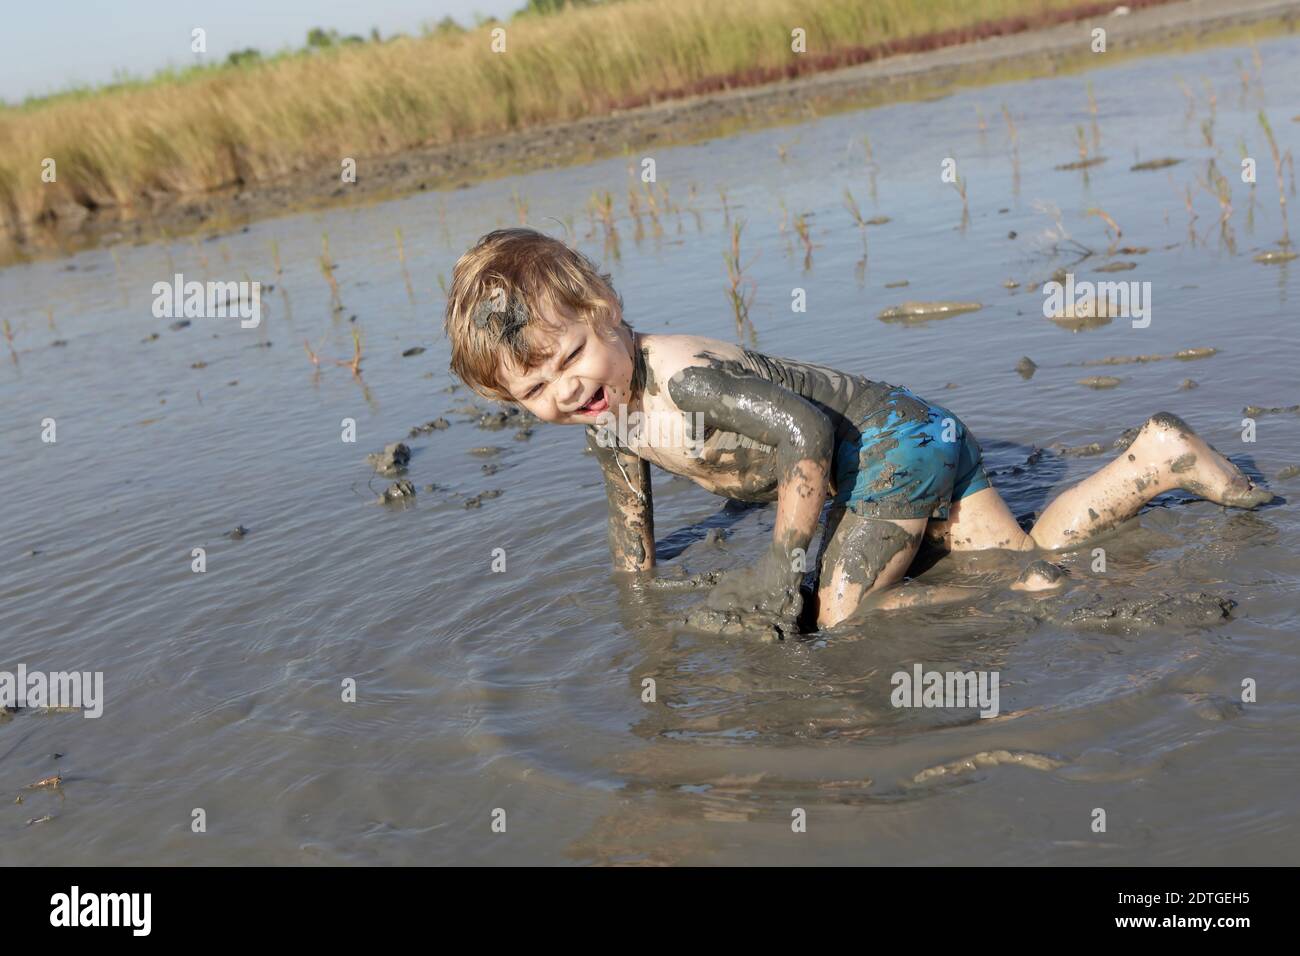 El niño está arrastrándose en barro curativo, Rusia Foto de stock